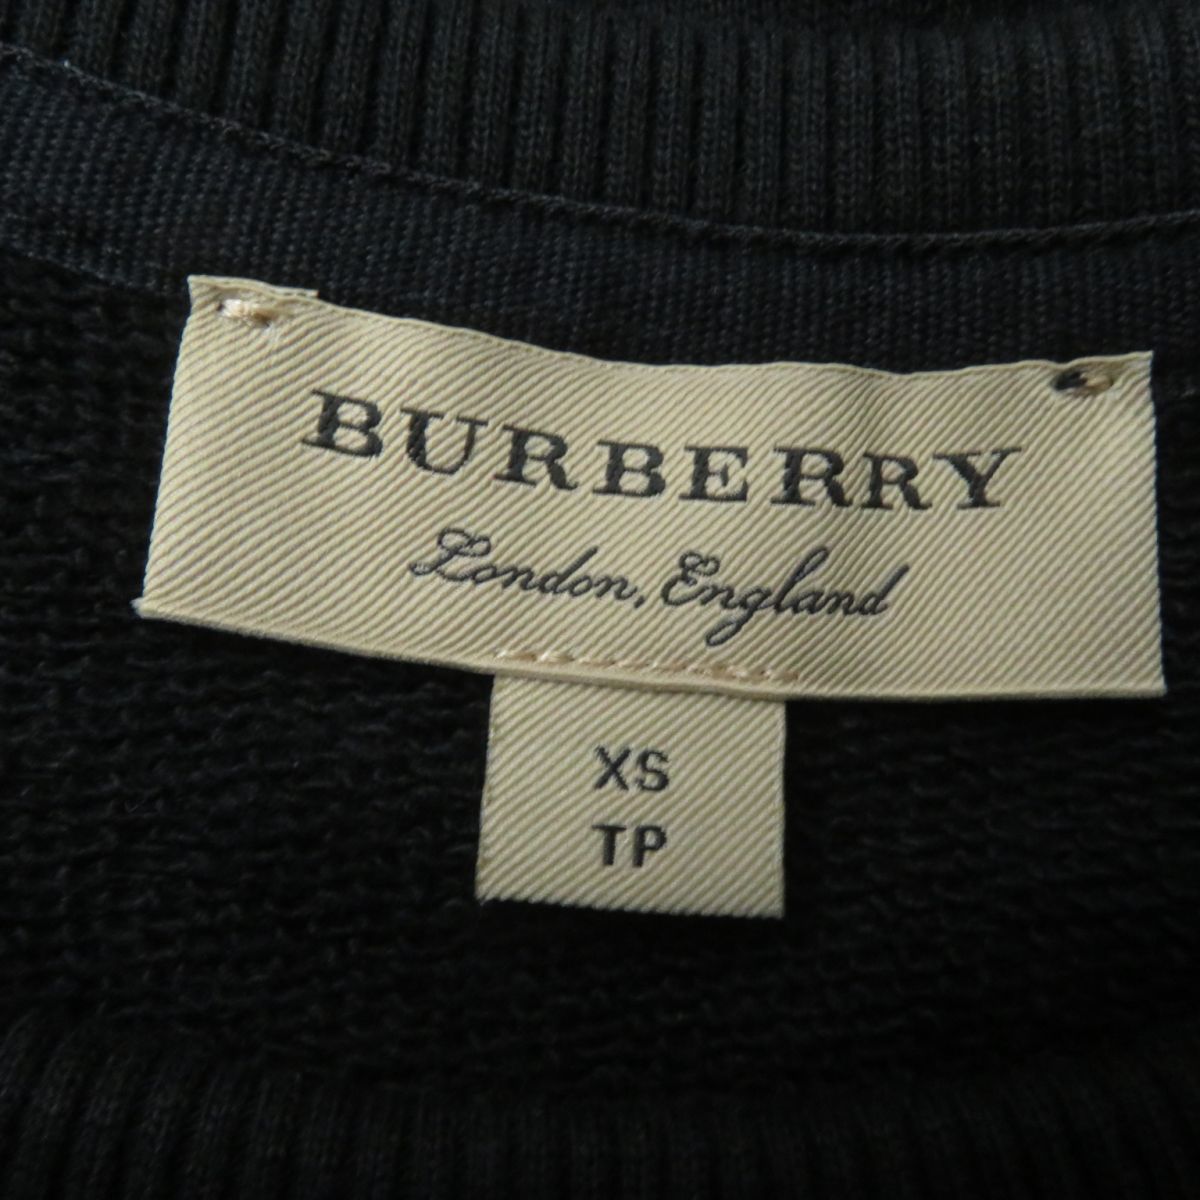  прекрасный товар * стандартный товар Burberry London Англия 8007168 Logo patch есть спортивная фуфайка / футболка черный XS женский Portugal производства 